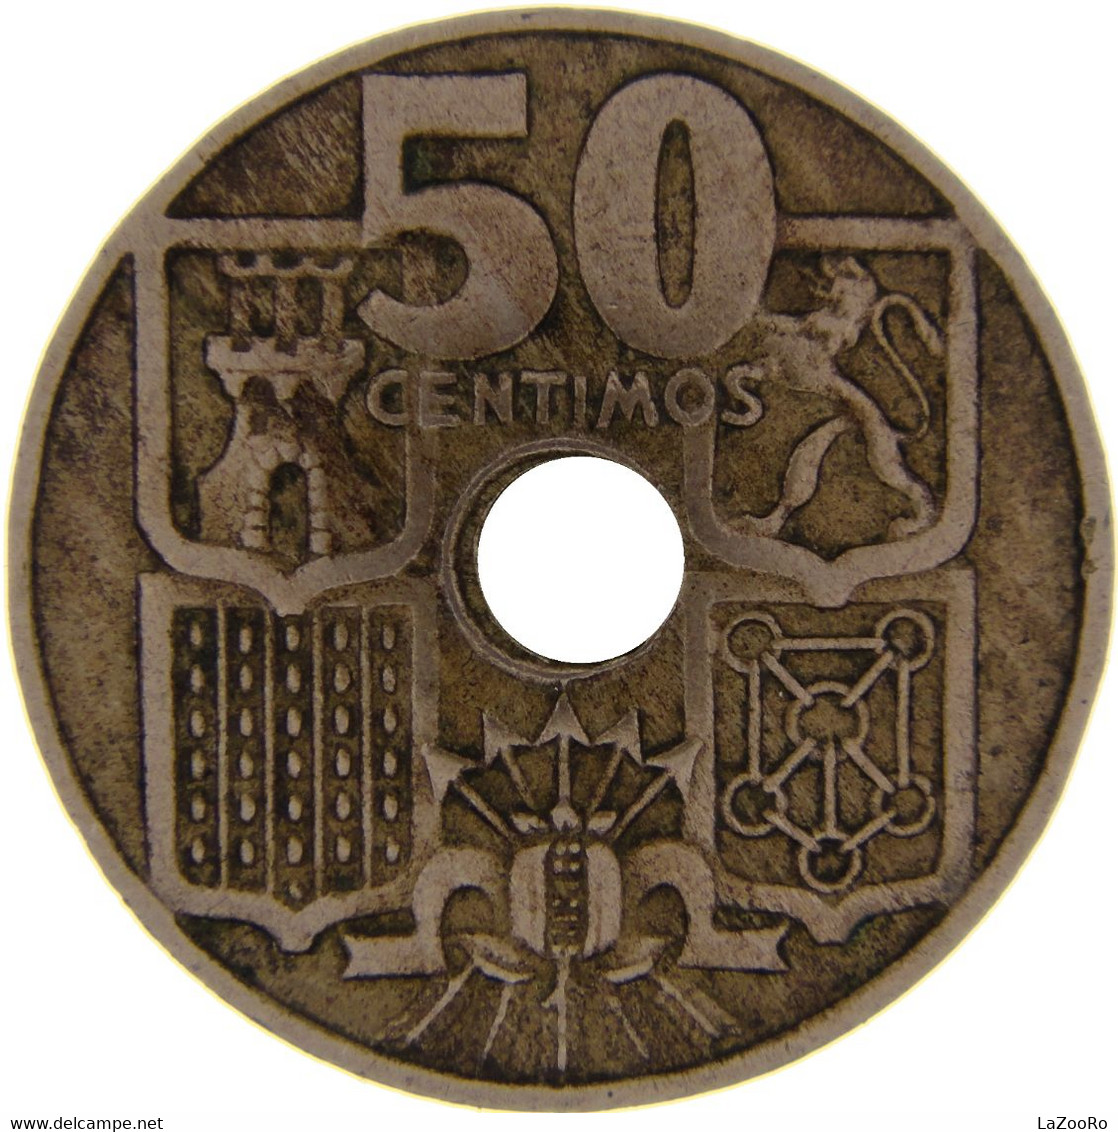 LaZooRo: Spain 50 Centimos 1951 XF / UNC - 50 Centimos